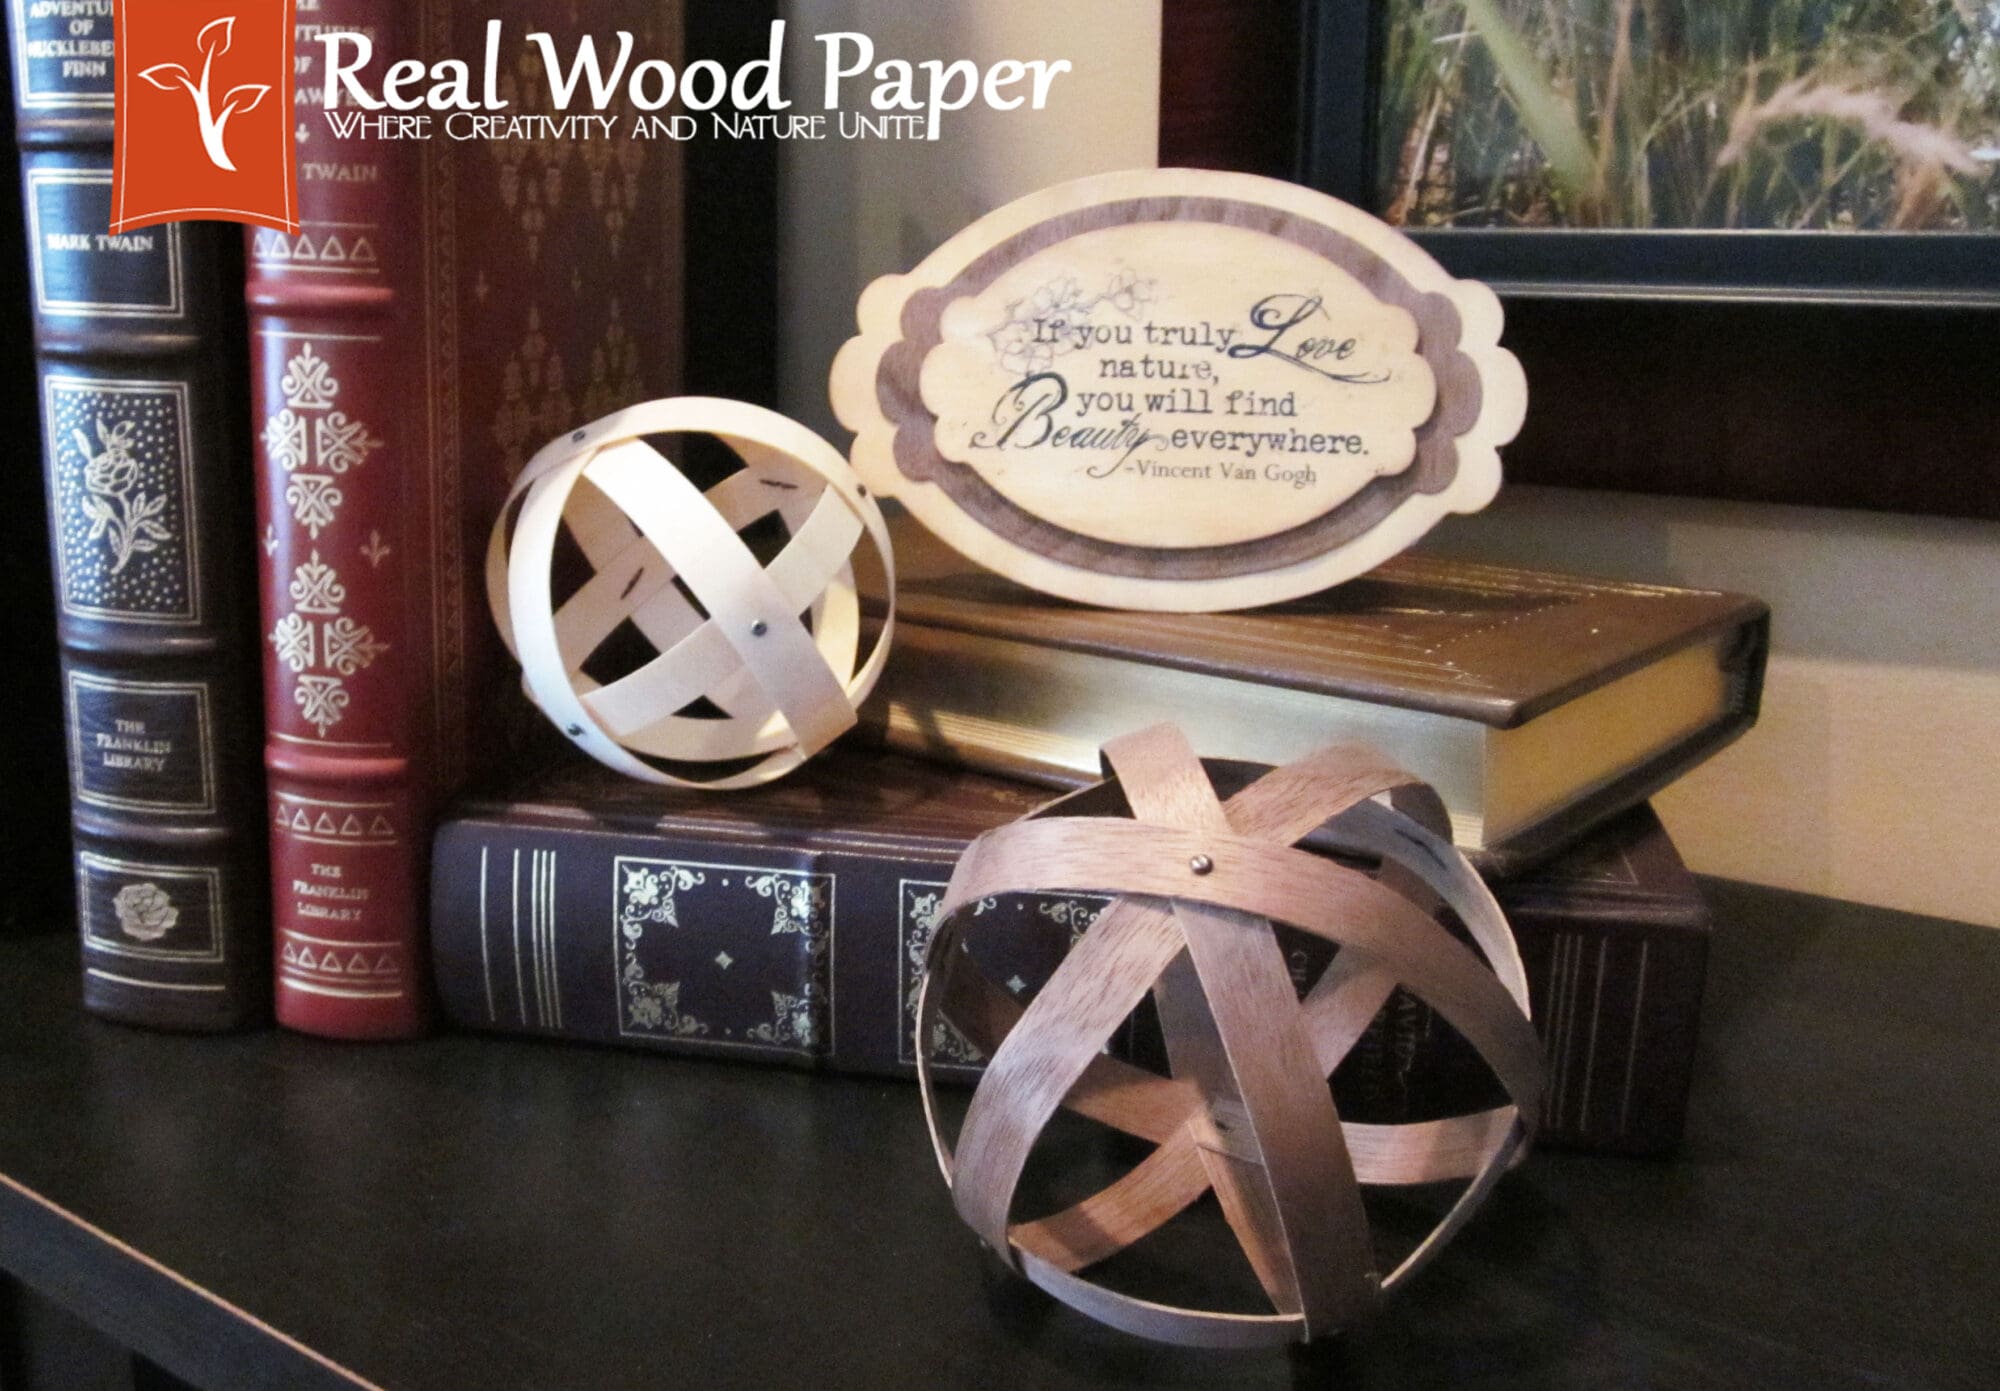 Real Wood Paper Wood Strip Spheres and die cutting wood veneer sheets